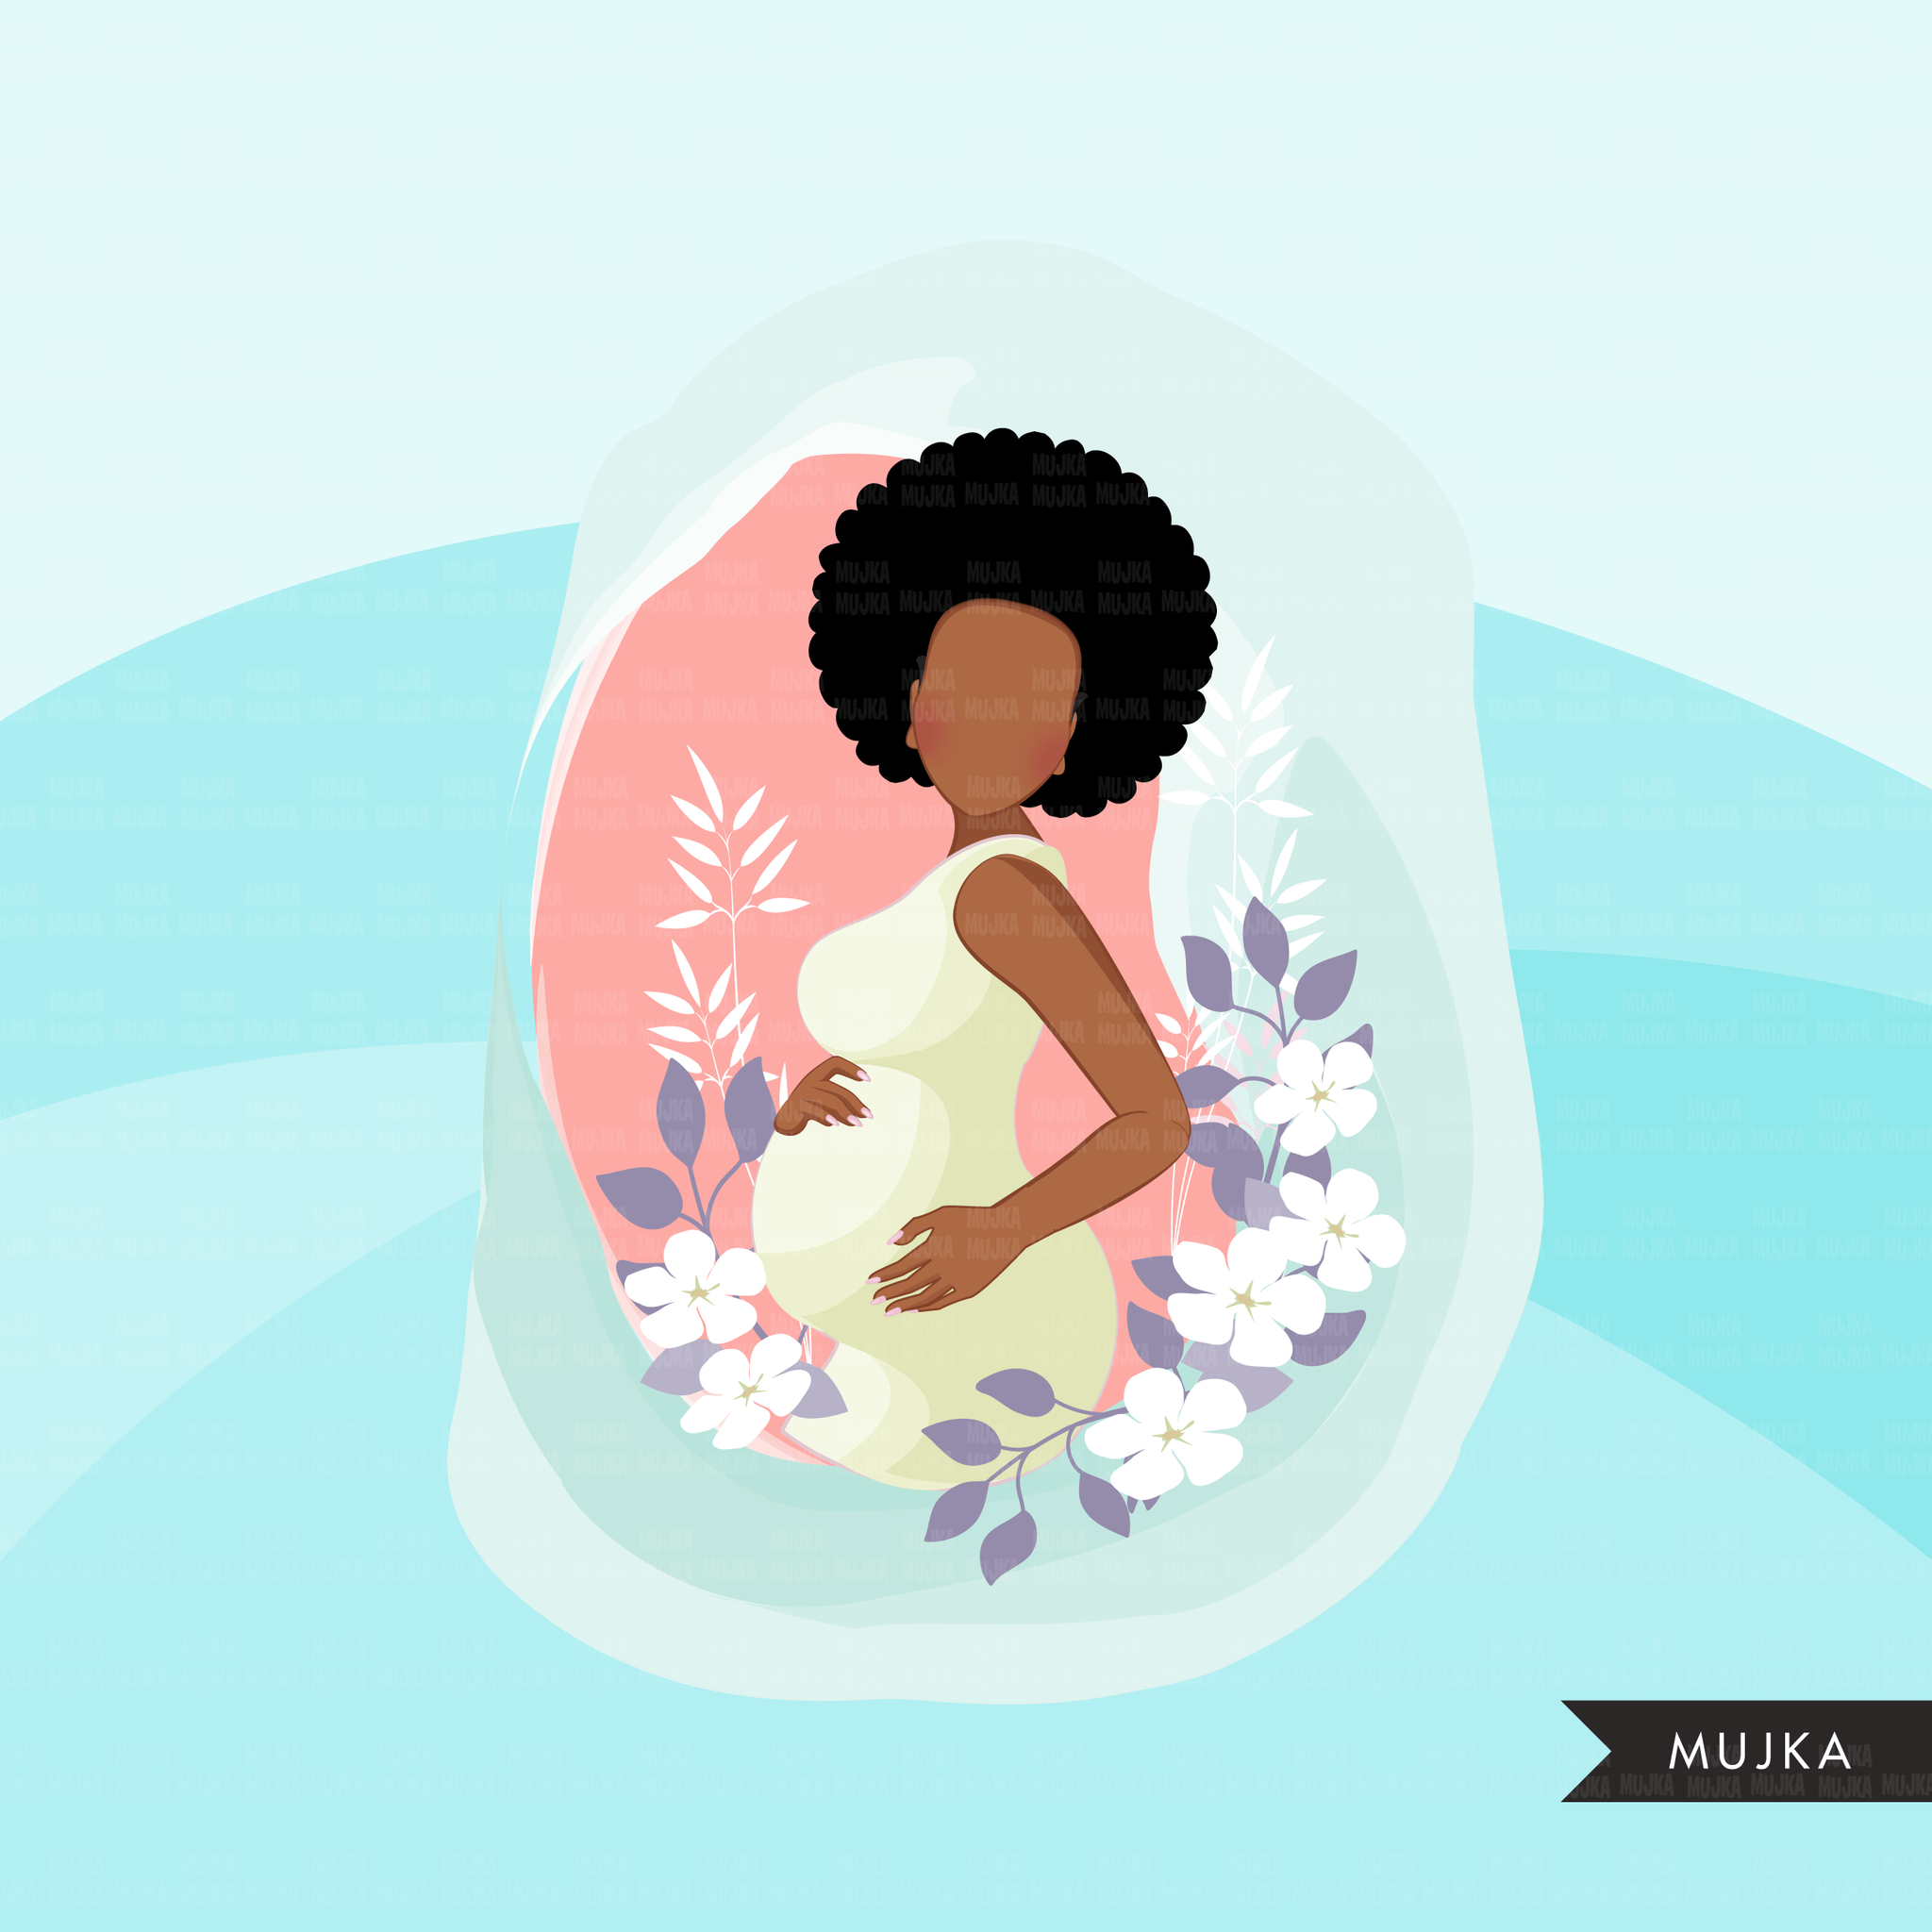 Clipart do Dia das Mães, download digital de designs de sublimação do dia das mães, lembrancinhas para chá de bebê, arte de parede, mulher afro negra grávida png